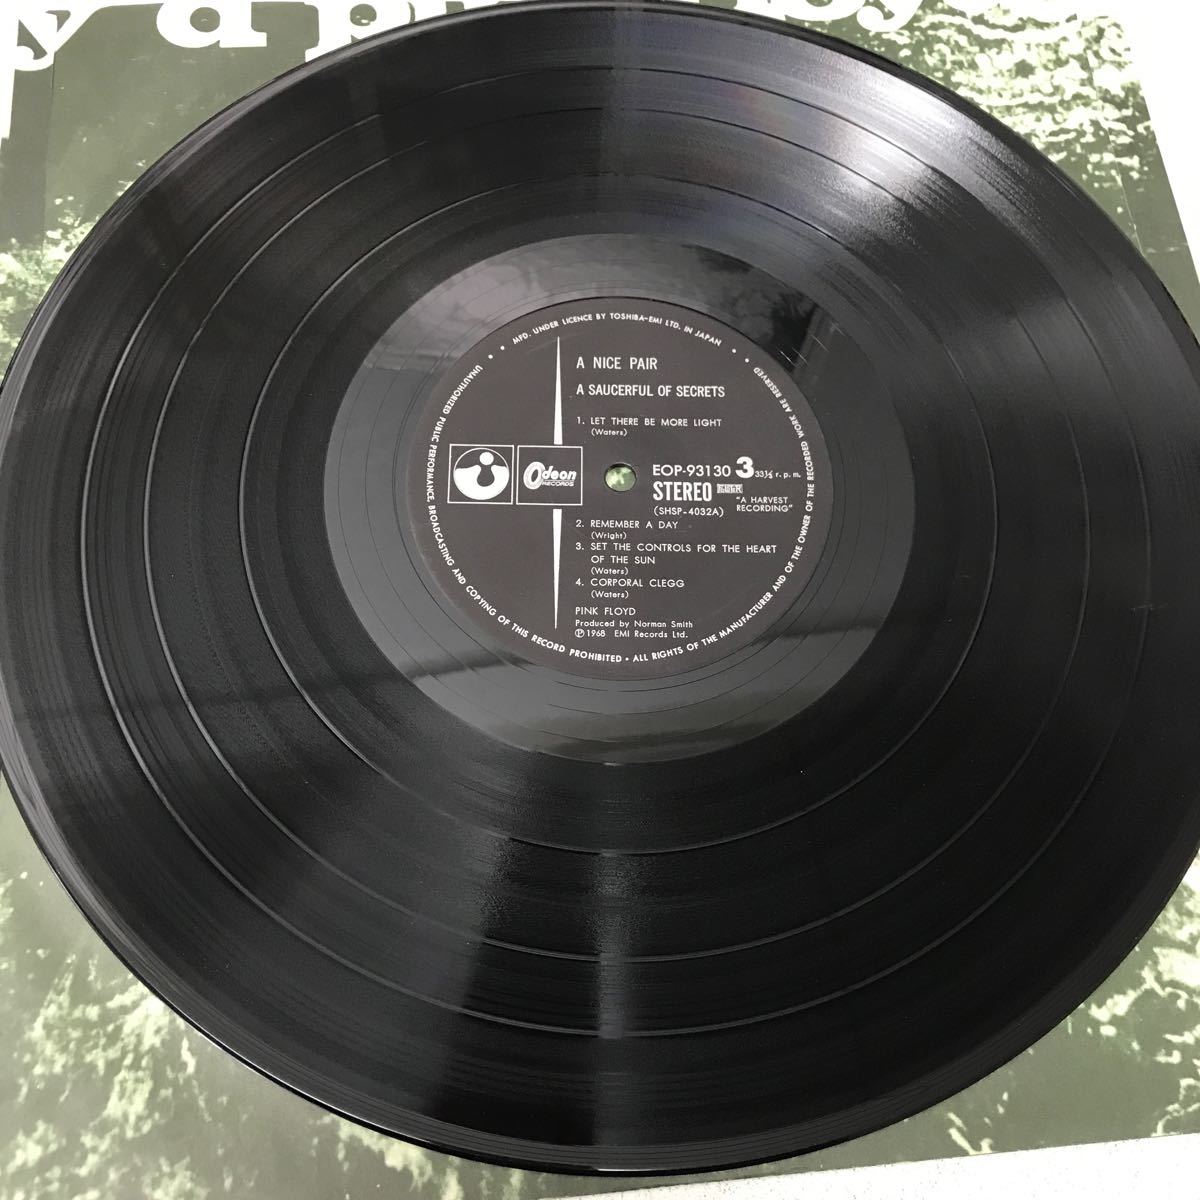 I0123A3 ピンク・フロイド PINK FLOYD A NICE PAIR LP レコード 2枚組 音楽 洋楽 ロック EOP-93129B 東芝EMI 国内版_画像7